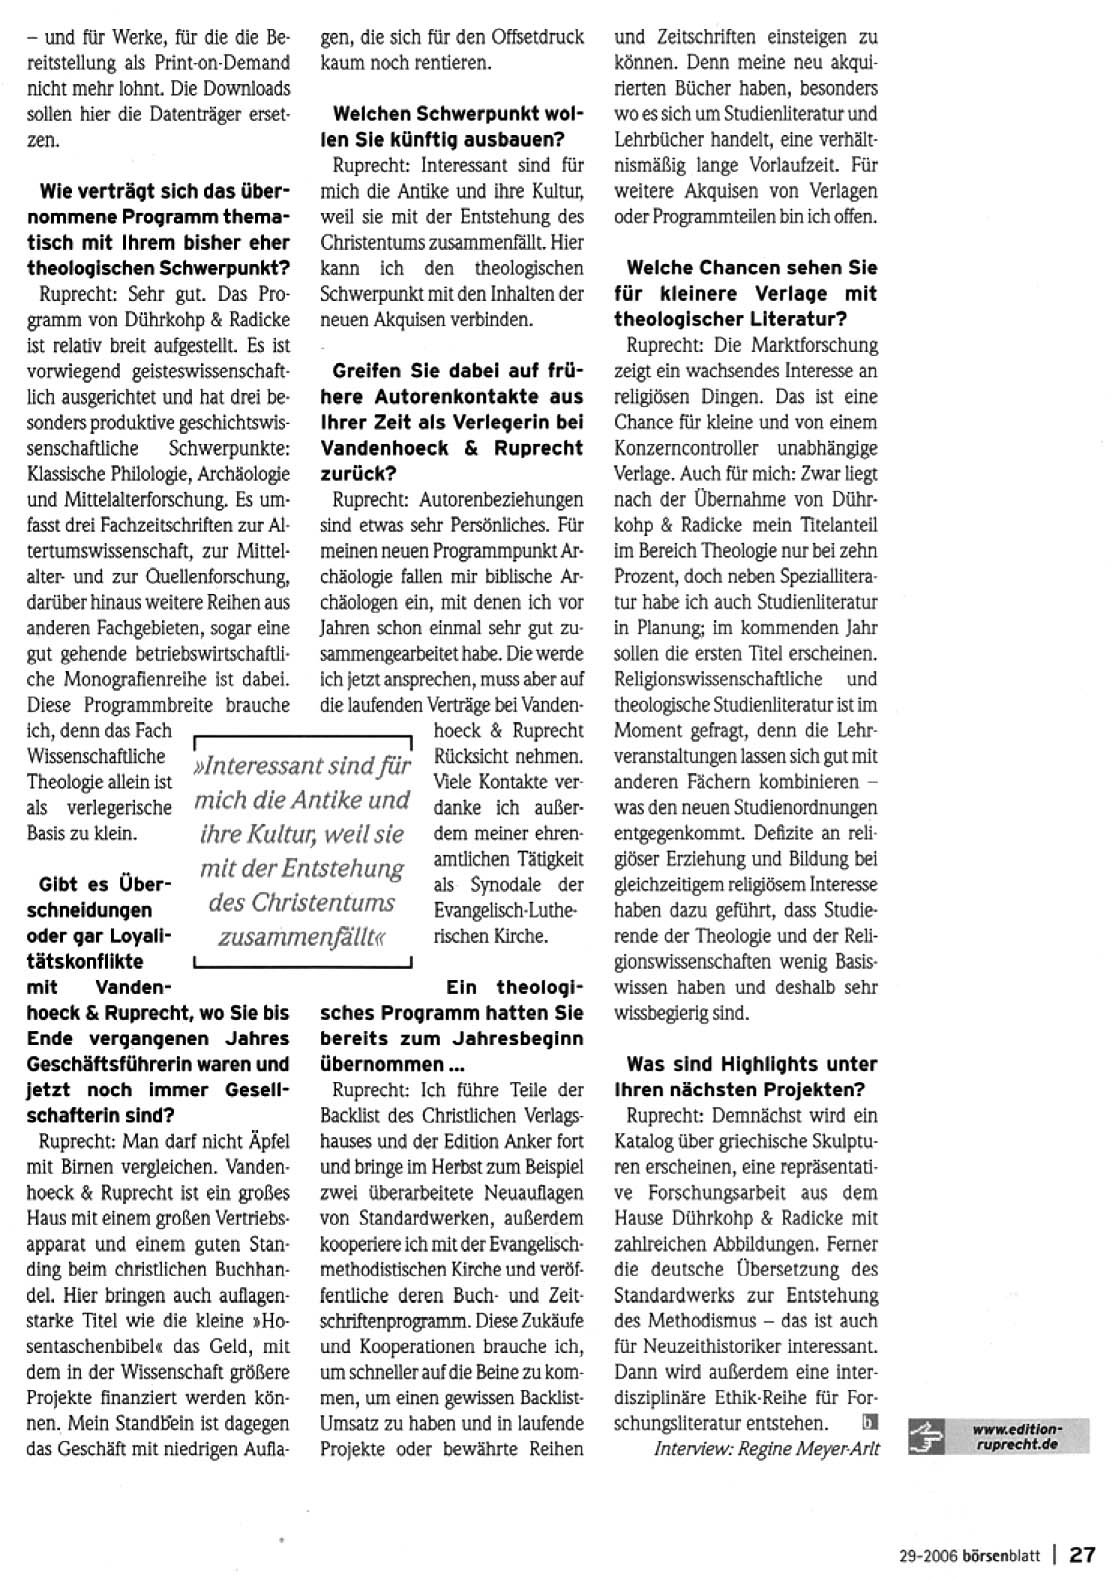 Pressemeldung Juli 2006, Börsenblatt: Know-how auf einen Schlag